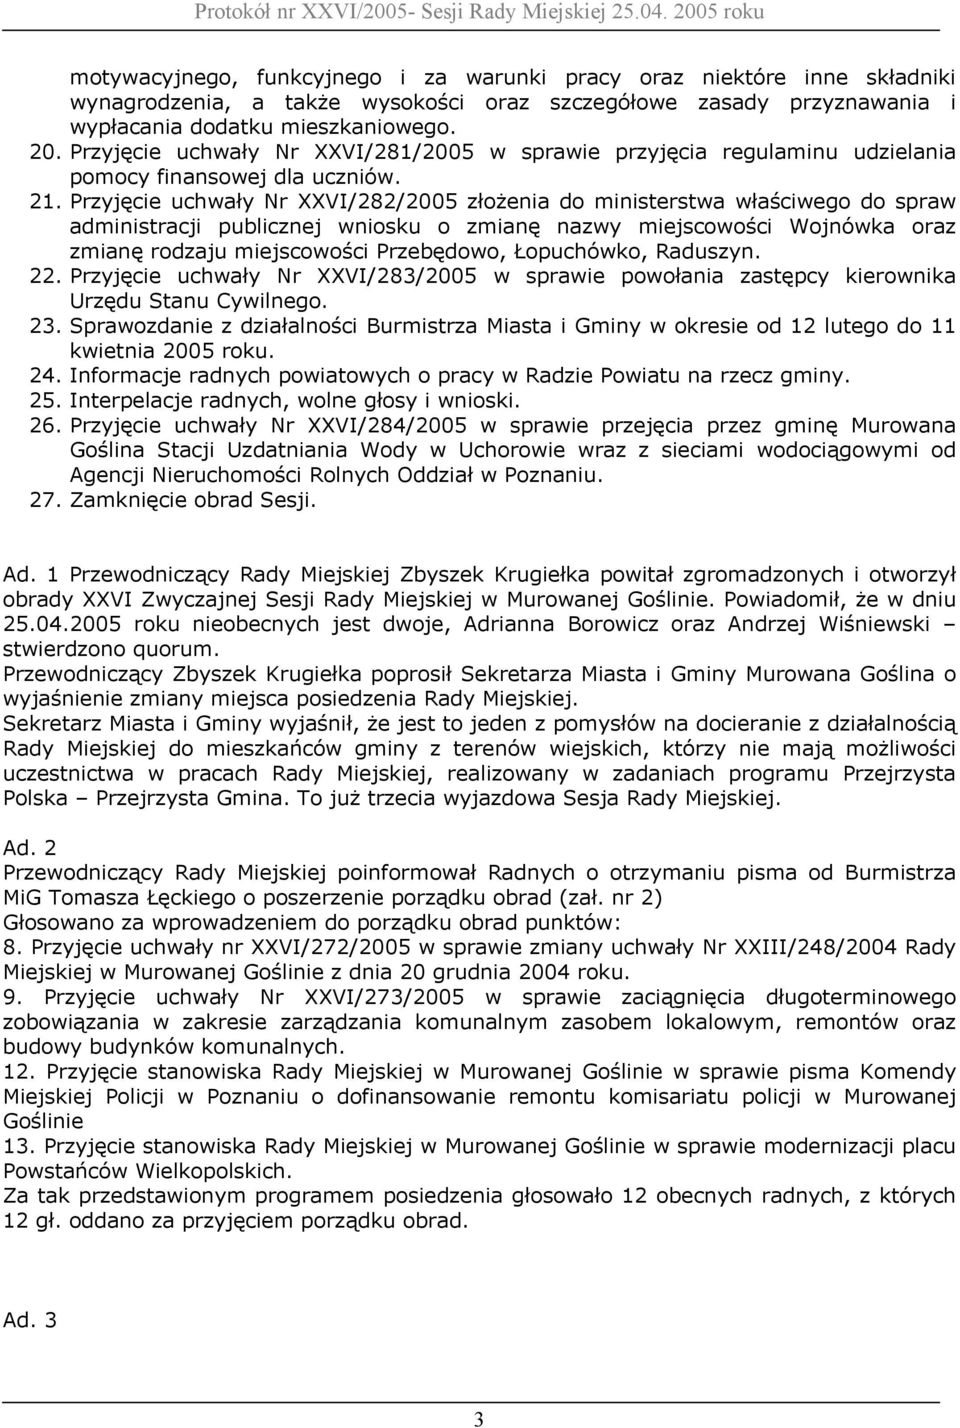 Przyjęcie uchwały Nr XXVI/282/2005 złożenia do ministerstwa właściwego do spraw administracji publicznej wniosku o zmianę nazwy miejscowości Wojnówka oraz zmianę rodzaju miejscowości Przebędowo,